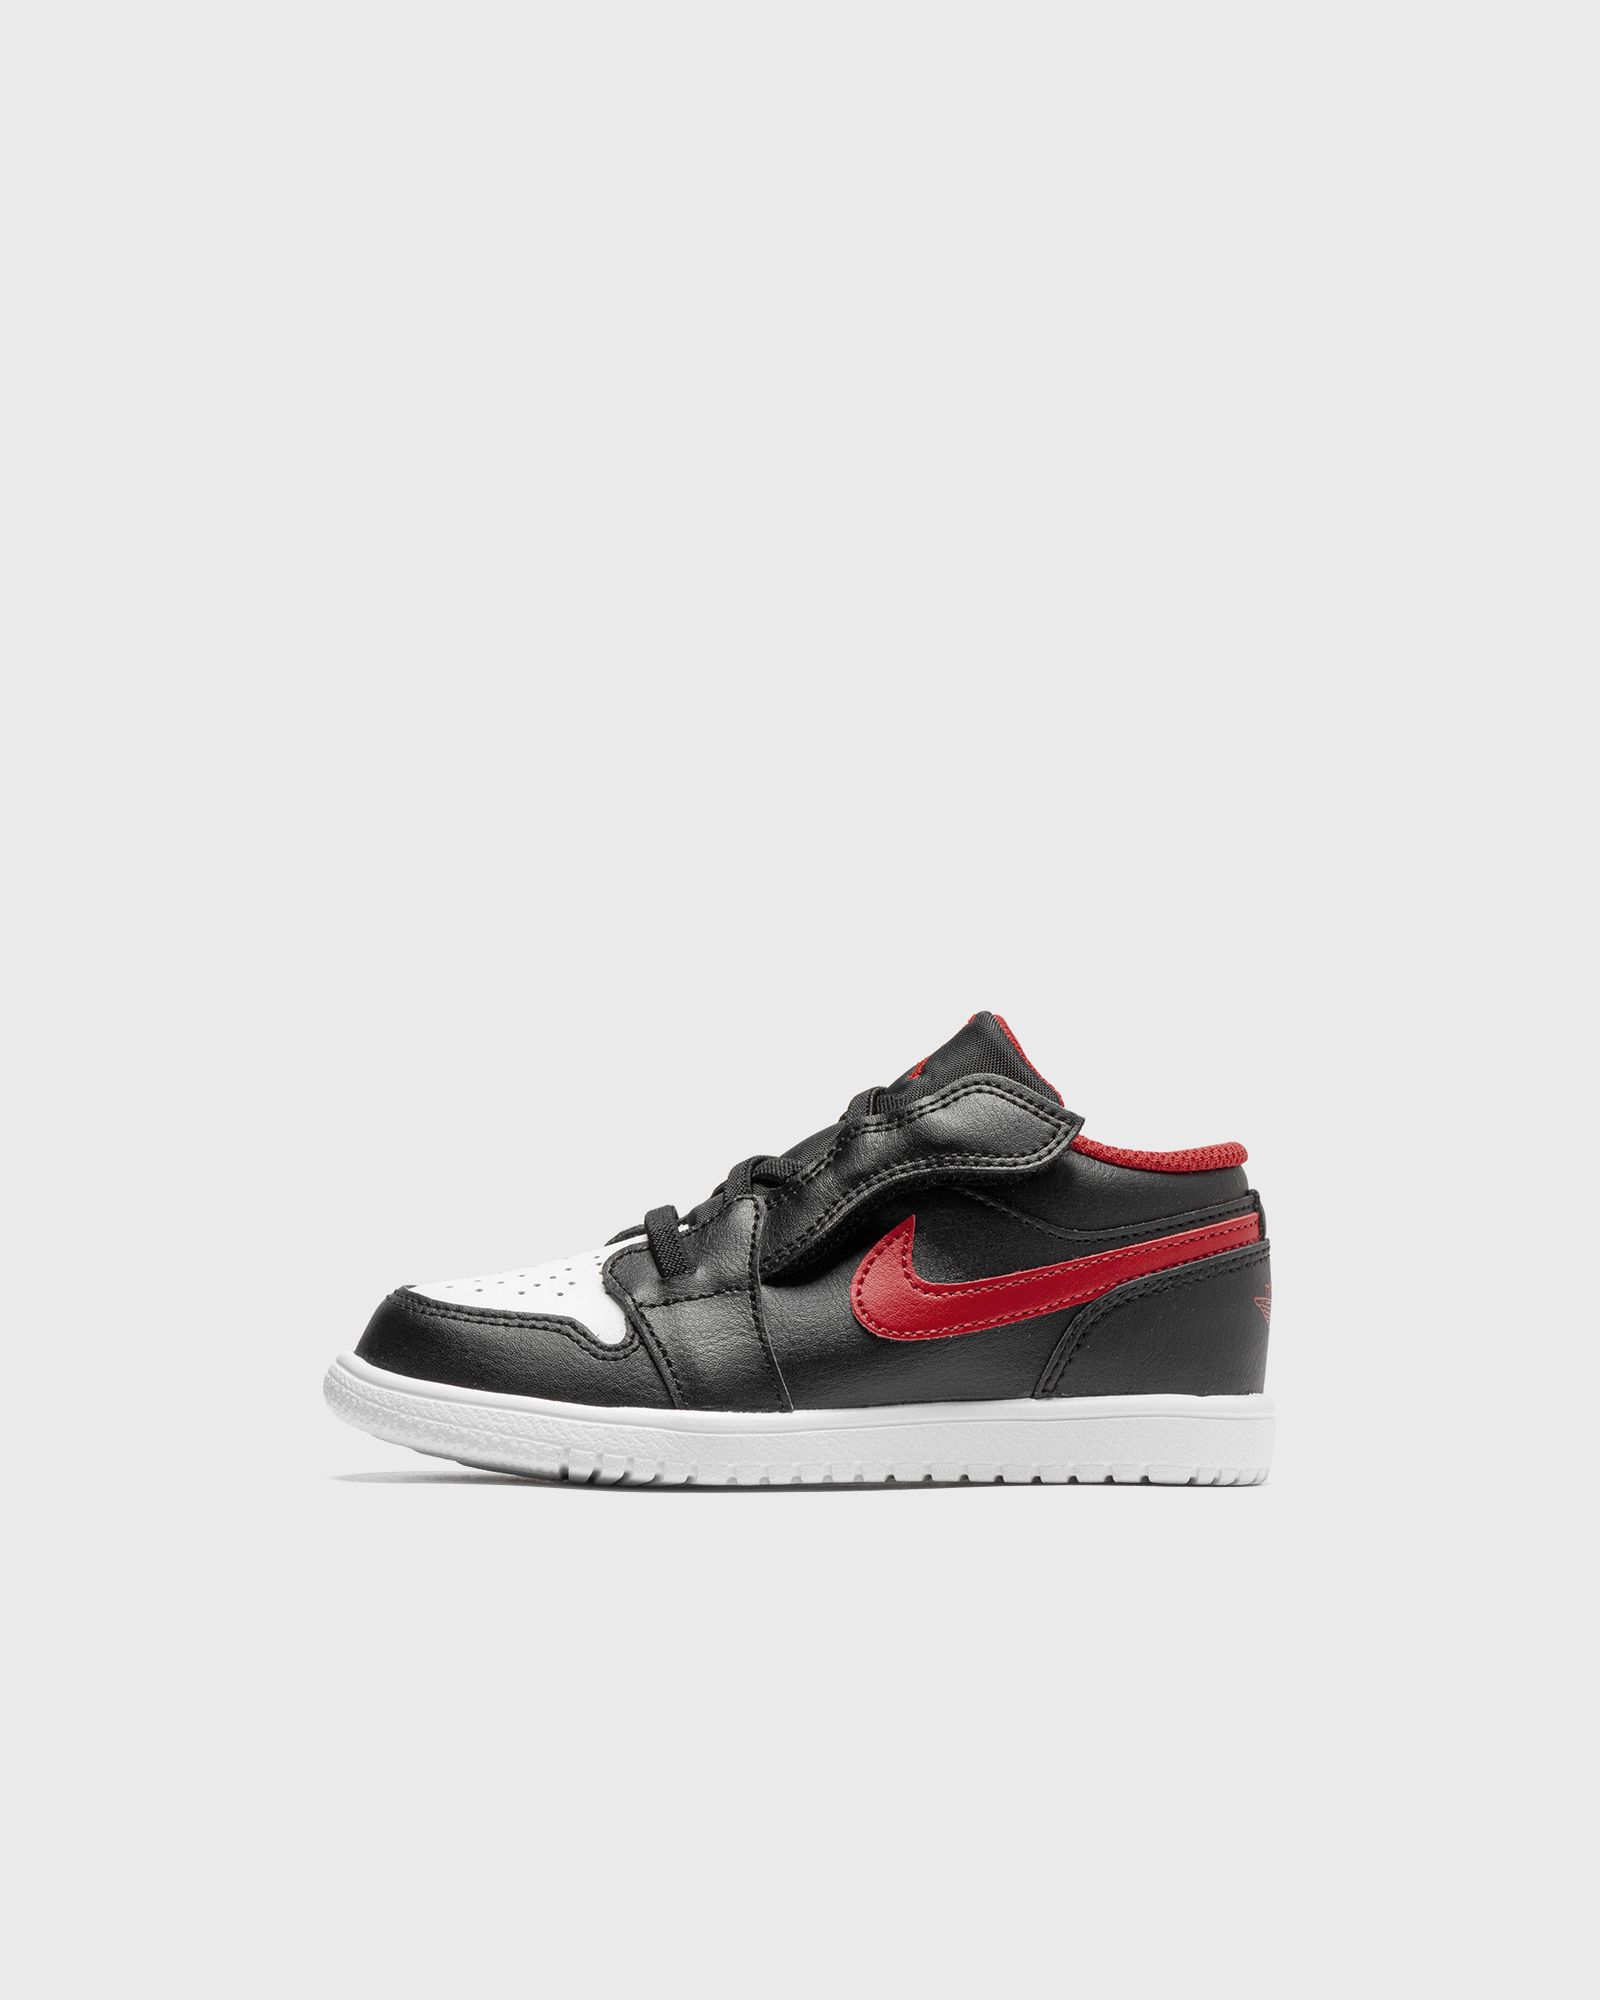 Jordan - 1 low alt (td)  sneakers black in größe:18,5